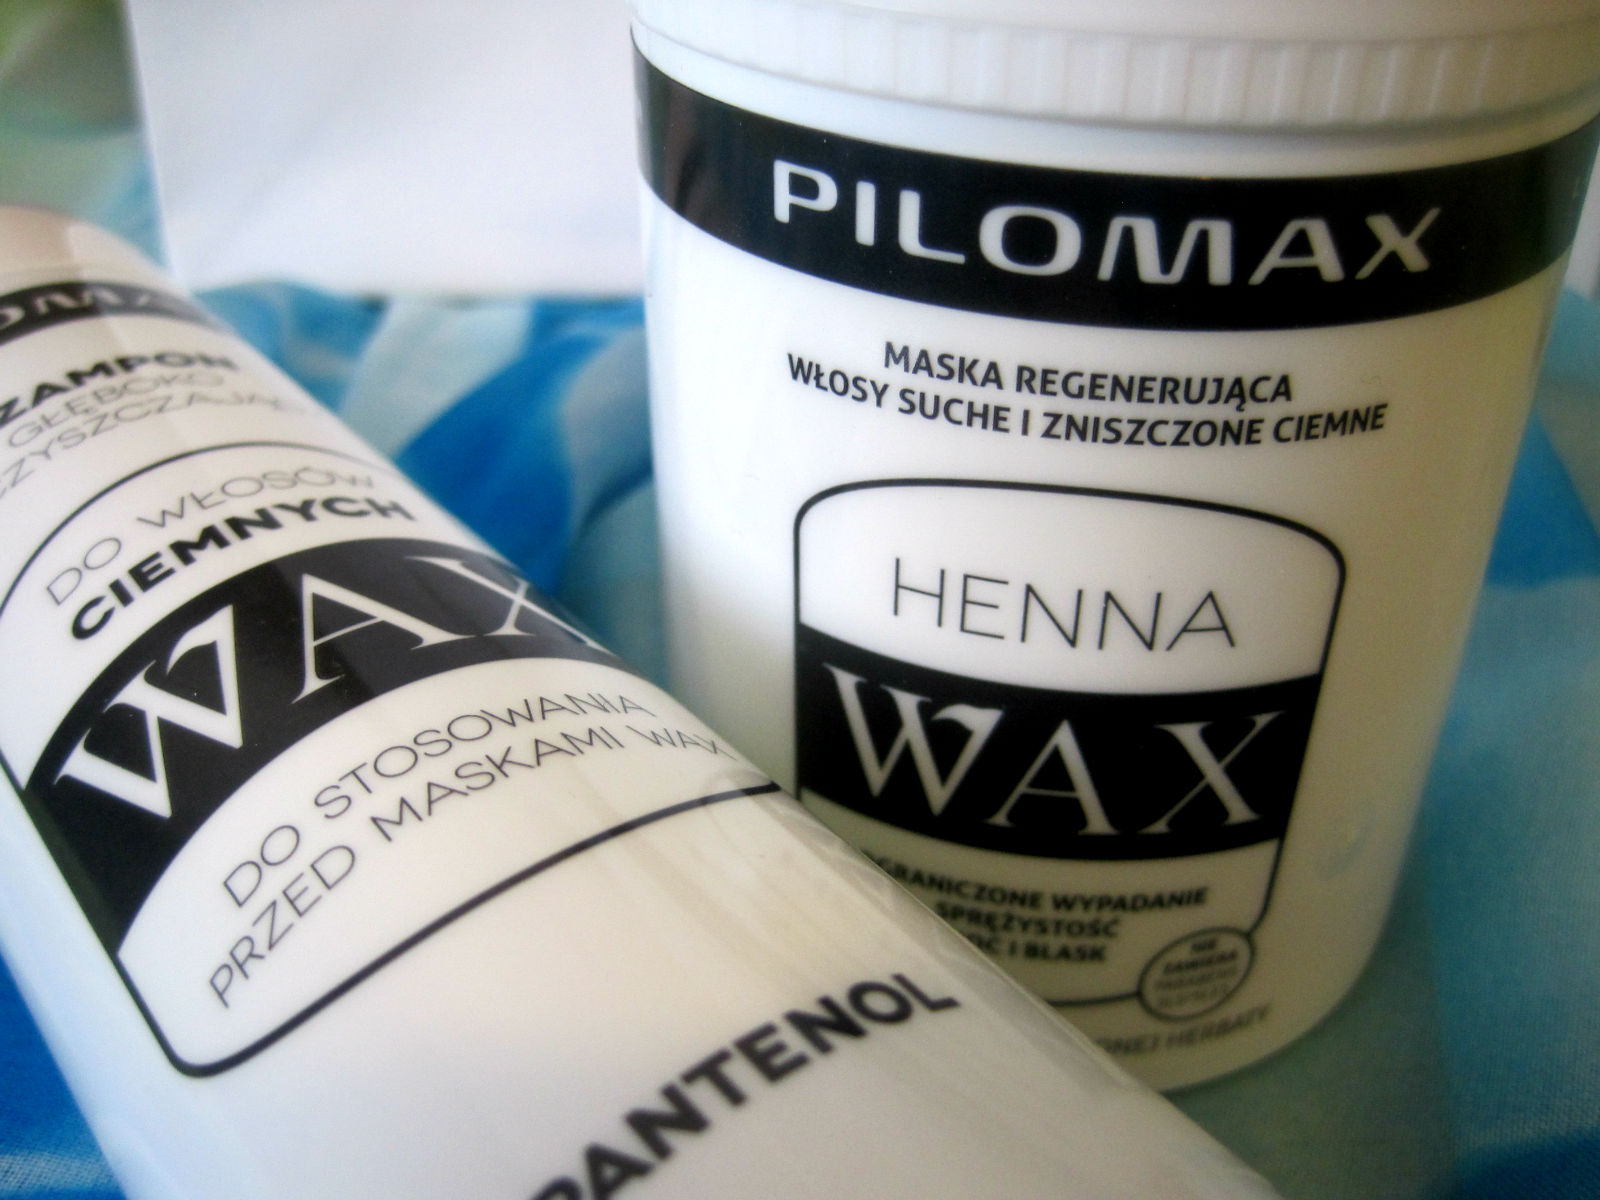 Pilomax szampon i maska - duet do włosów ciemnych